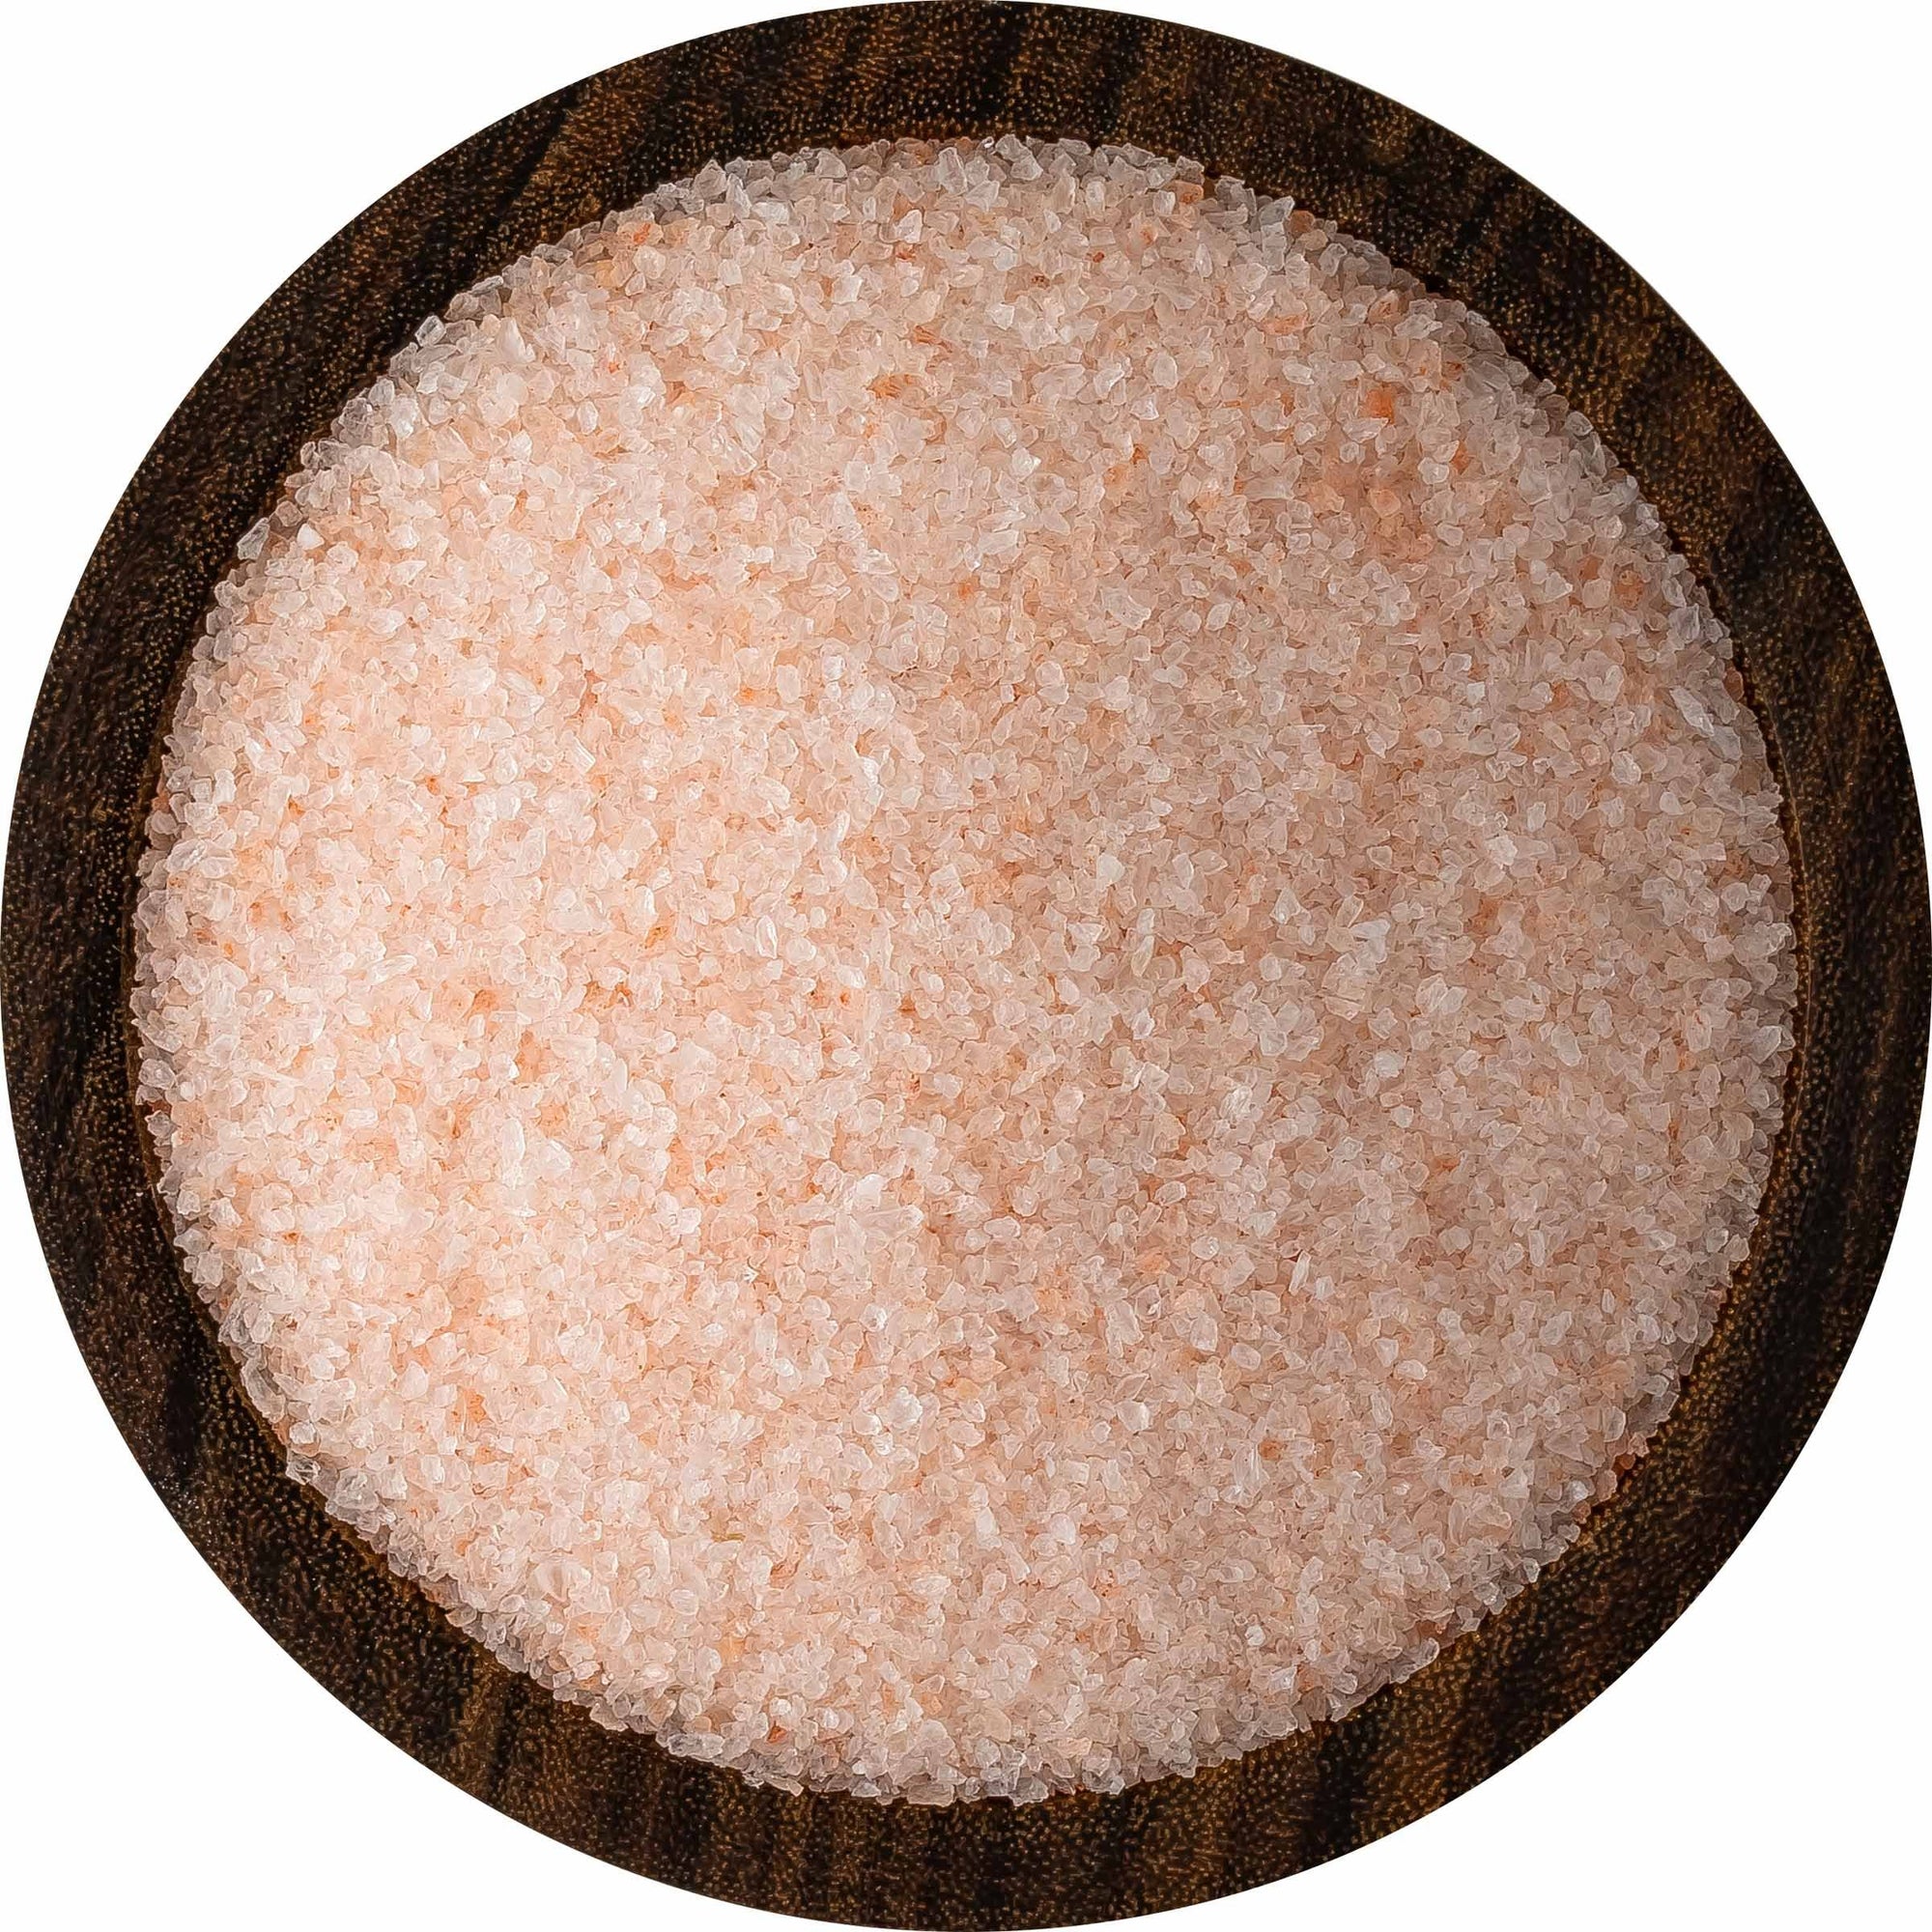 SaltWorks Himalayan Pink Salt